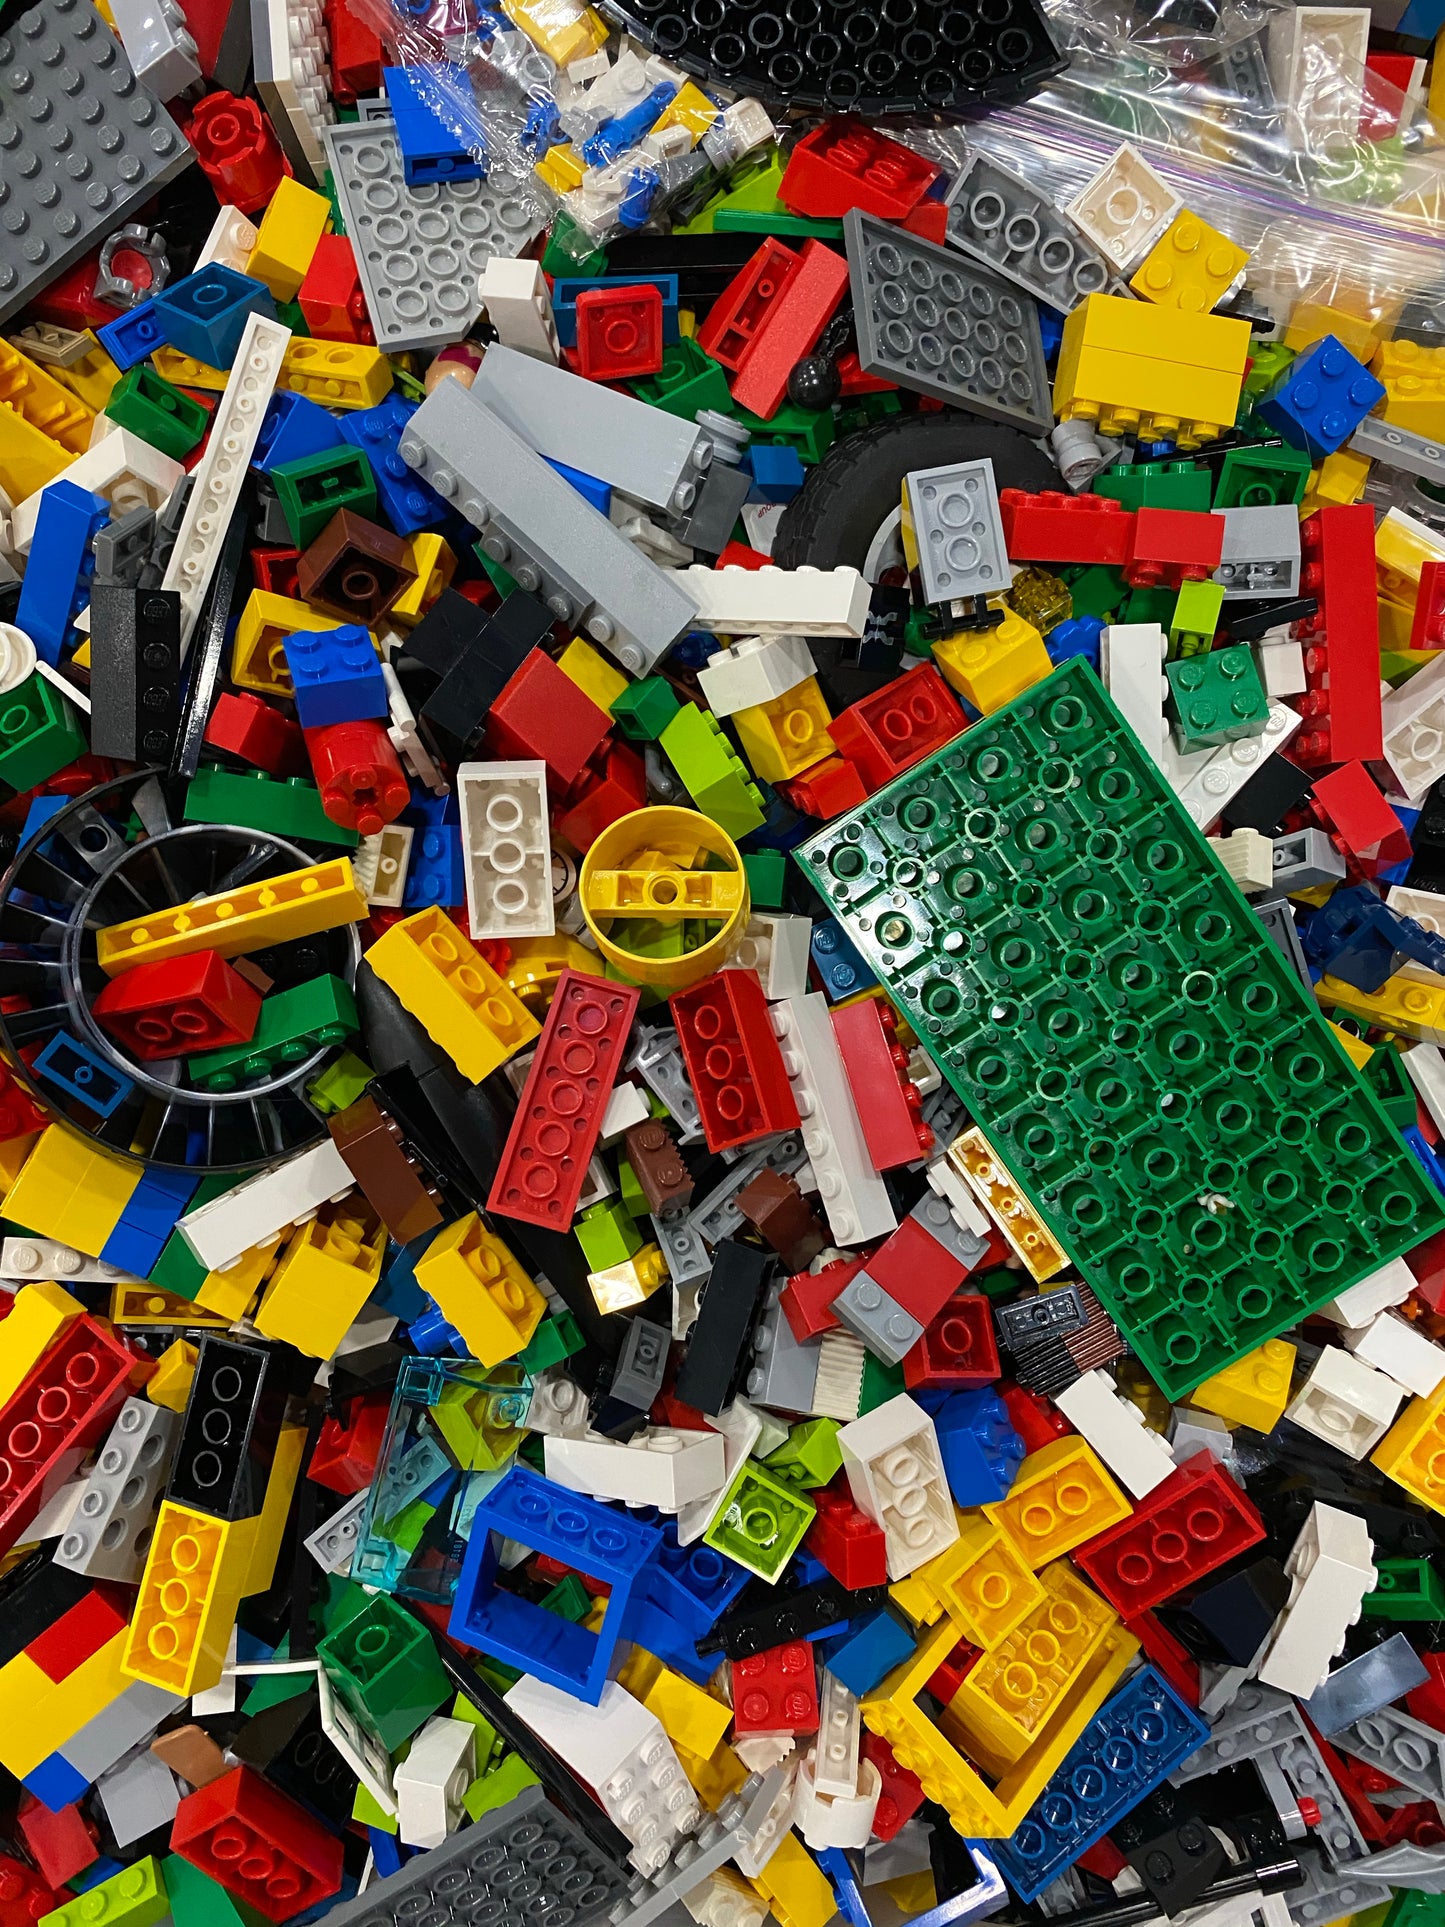 Lego Box